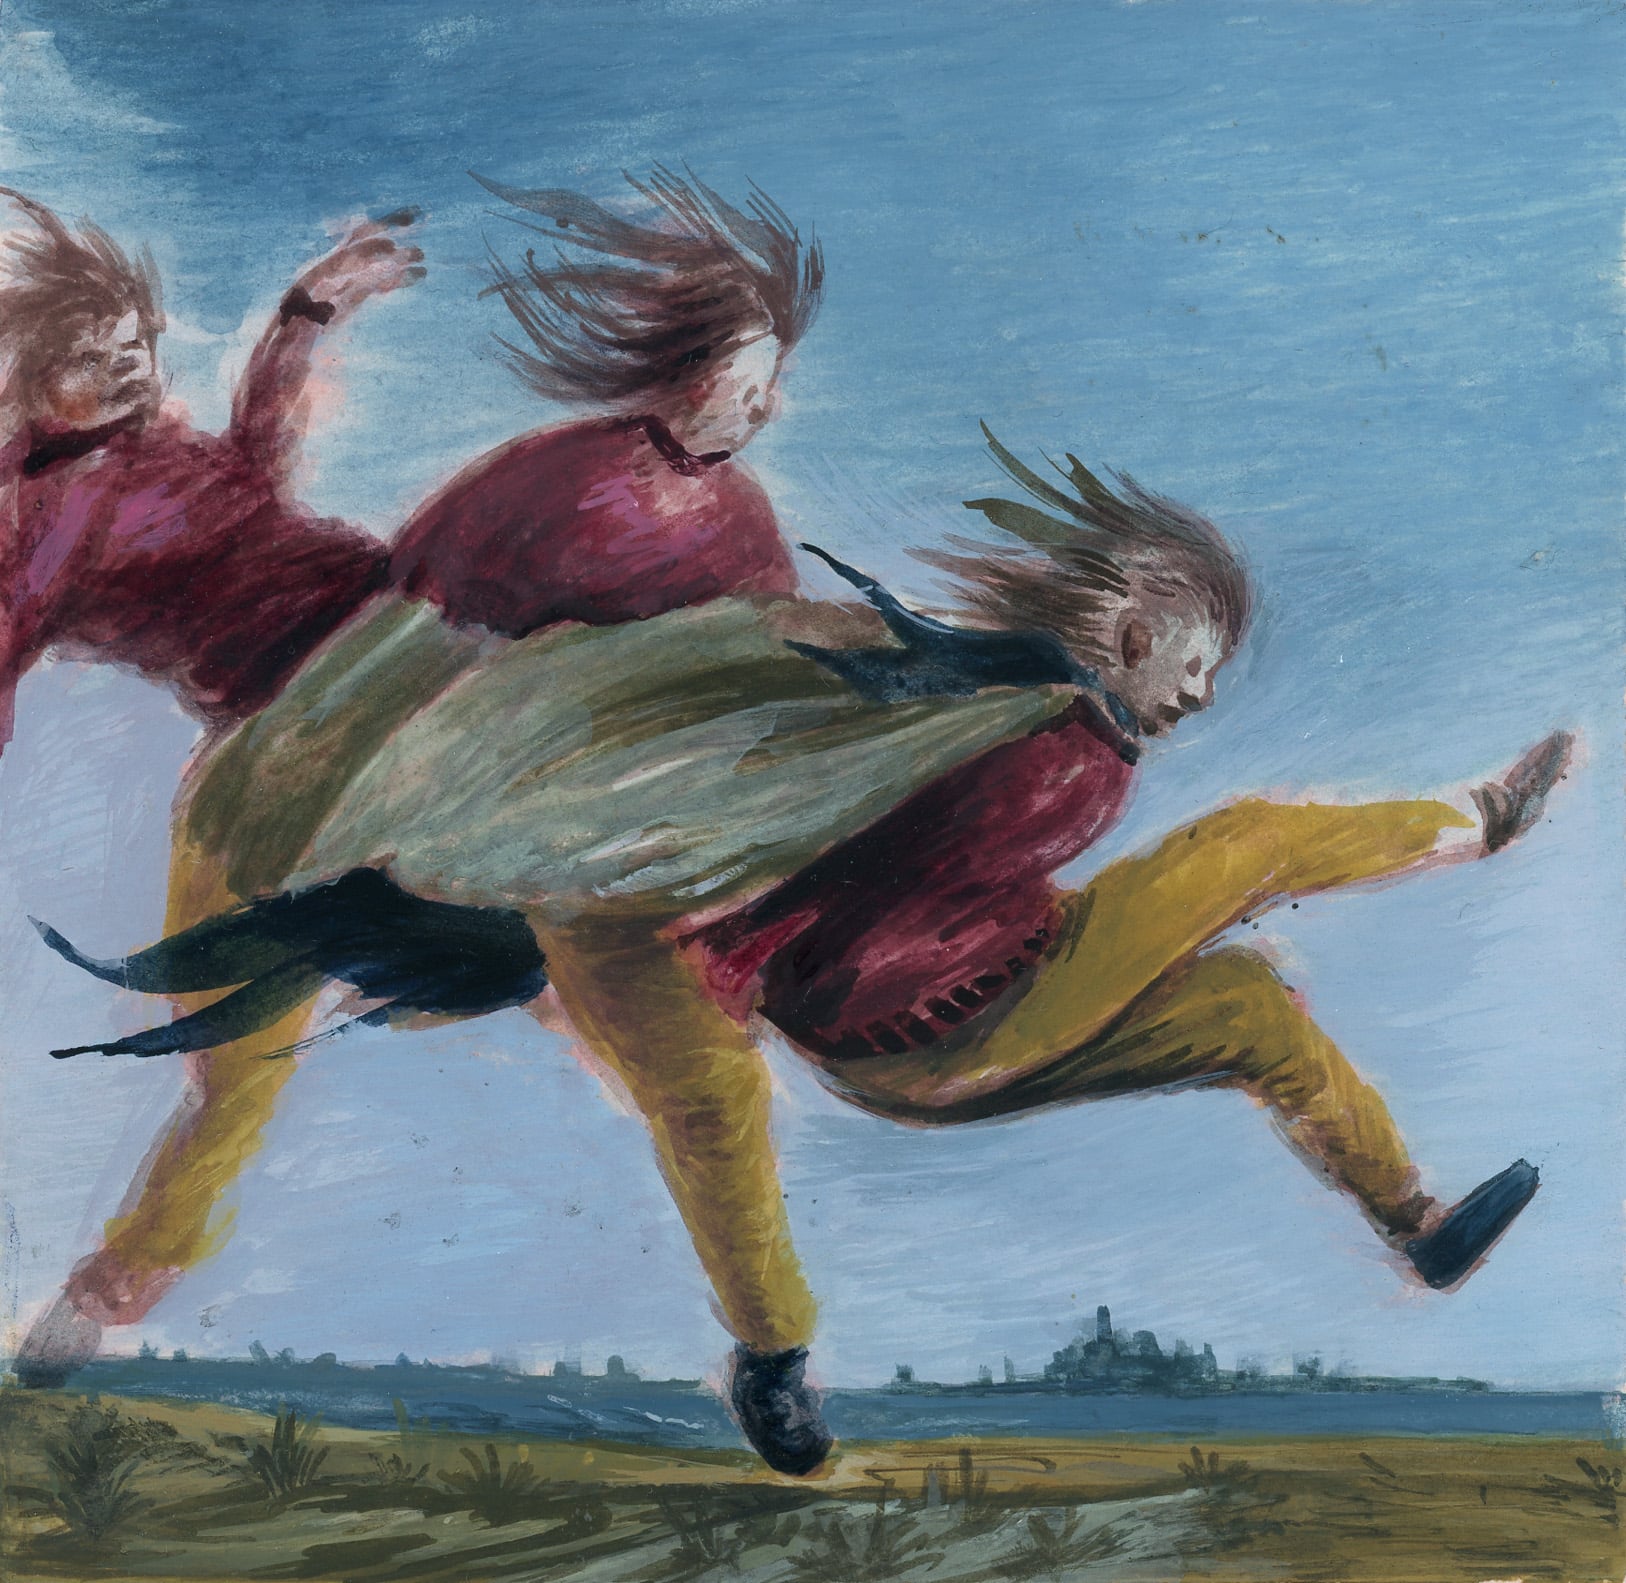 pintura que representa a una persona en movimiento posiblemente cayendo